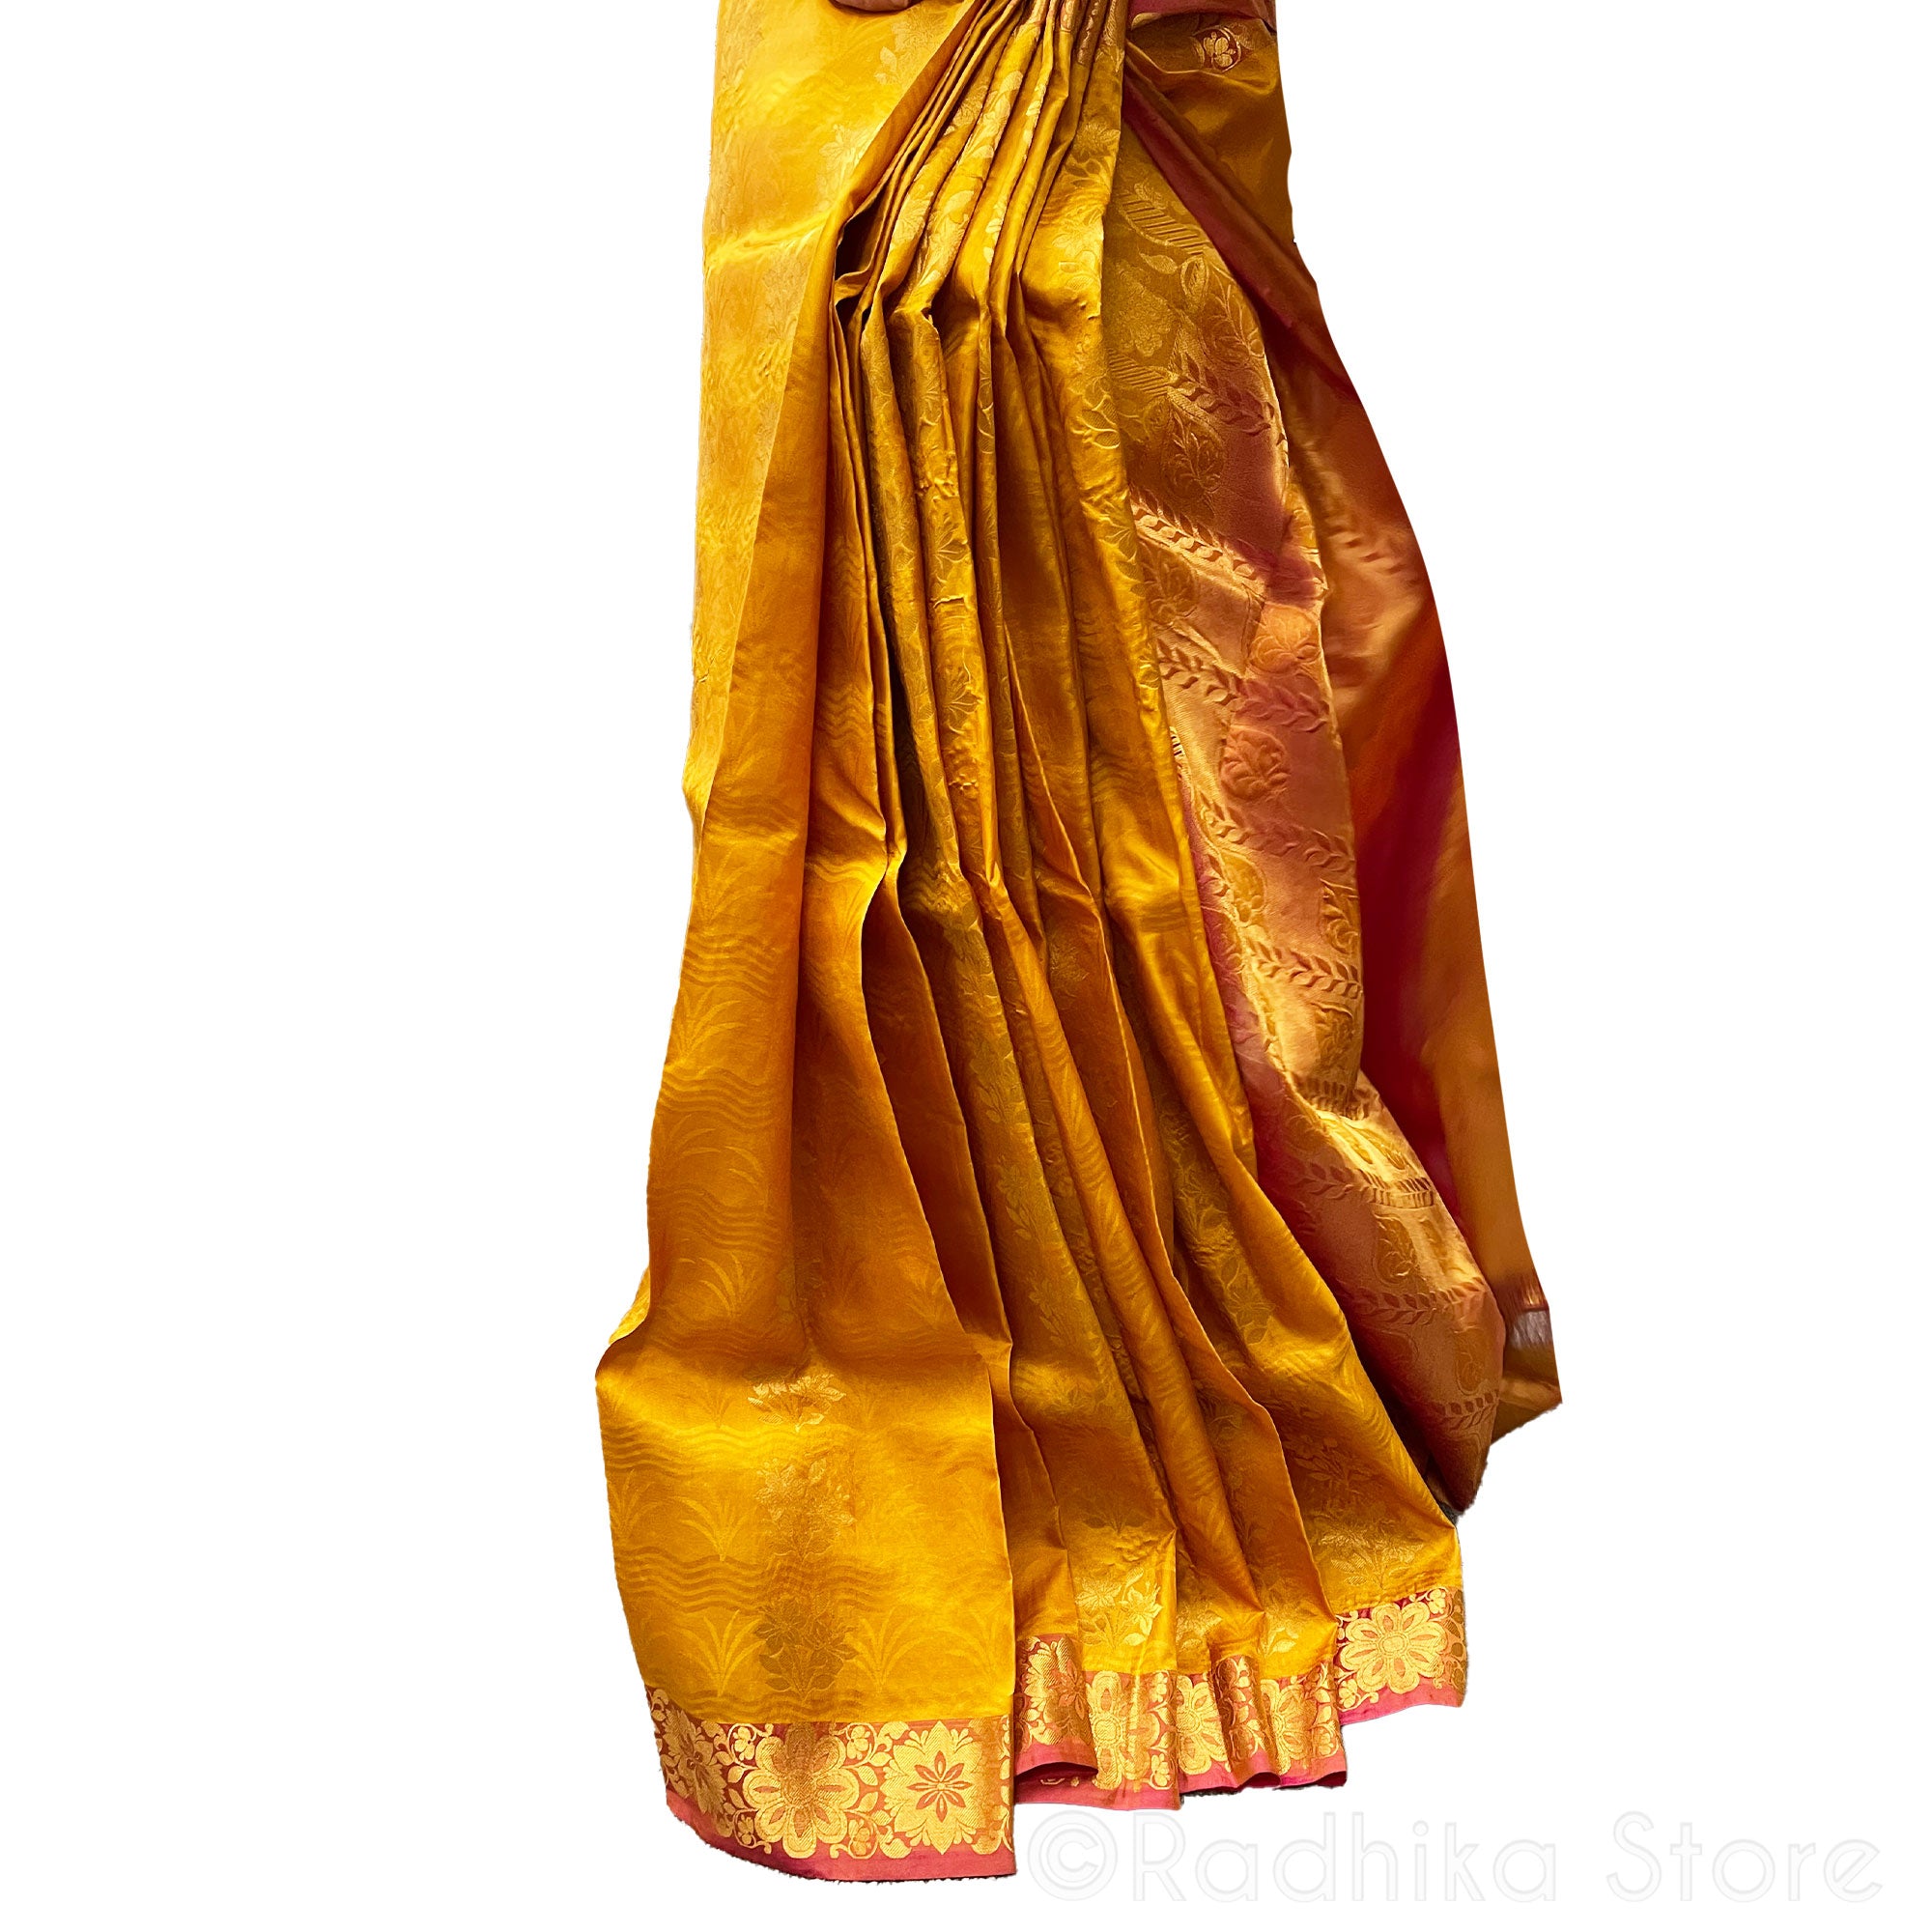 Golden Kunj-Stunning Gold and Dark Pink With Gold Jari - High Quality Silk Saree